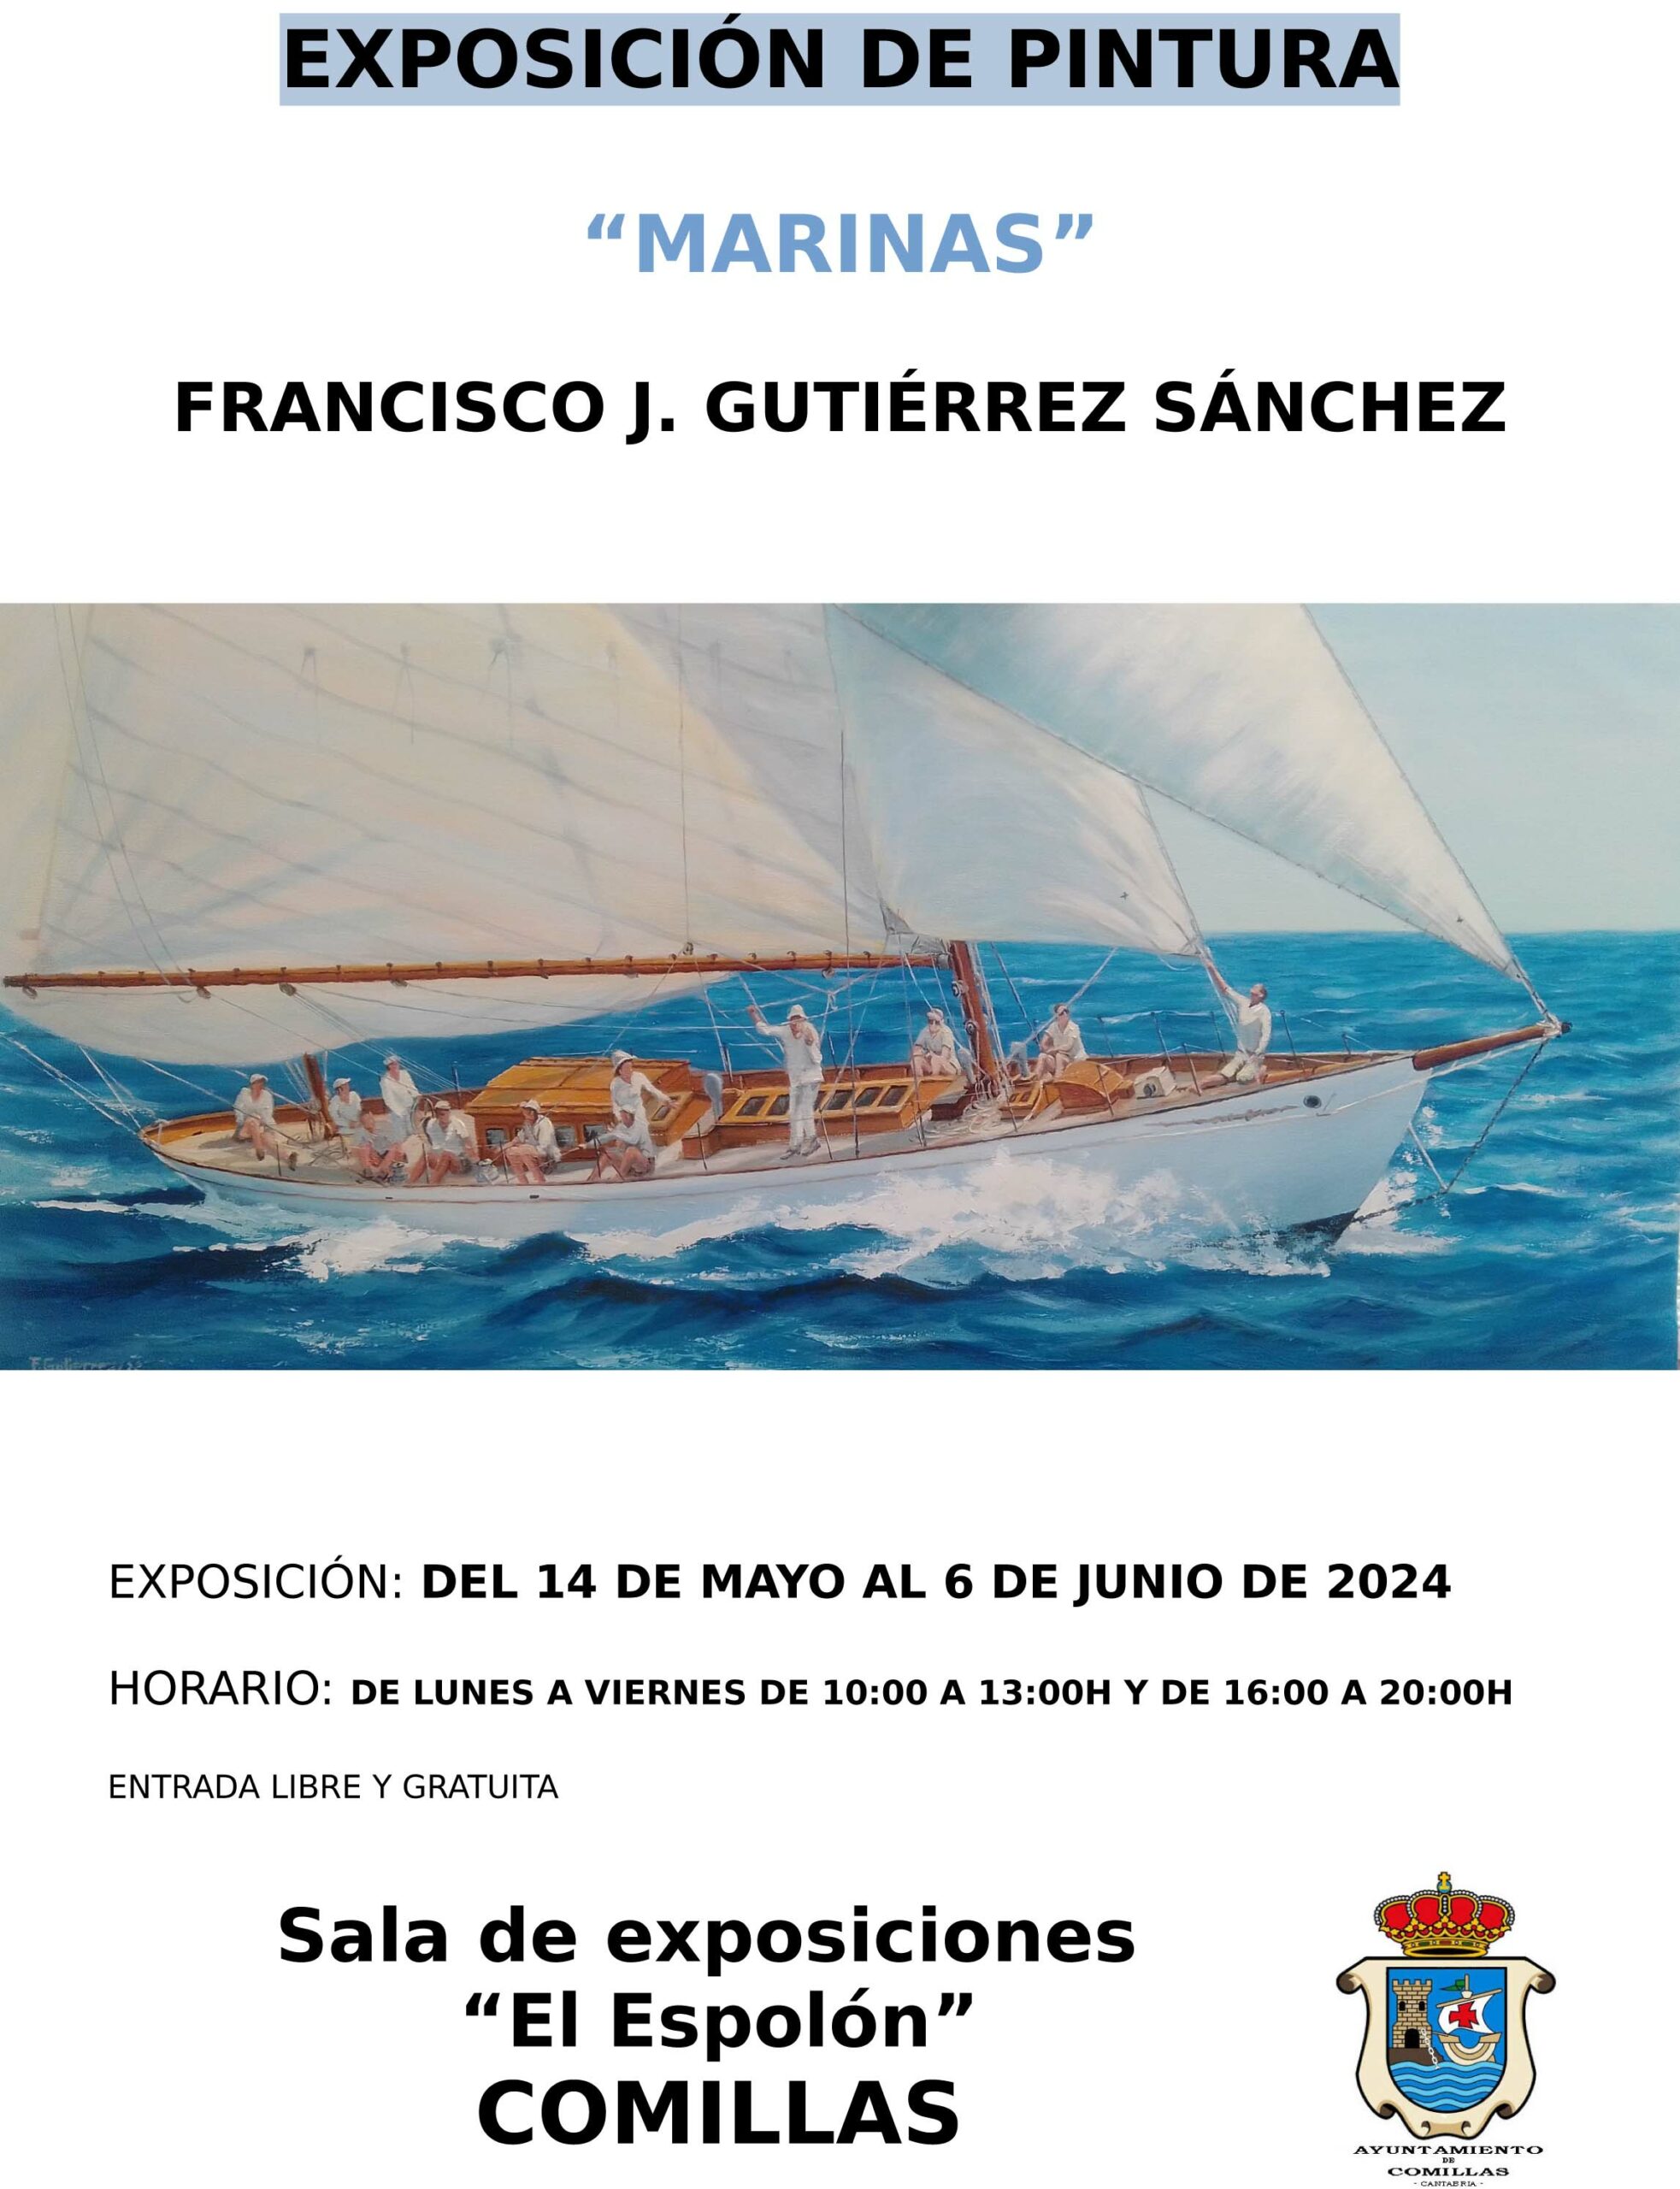 EXPOSICIÓN DE PINTURAS MARINAS Francisco J. Gutiérrez Sánchez